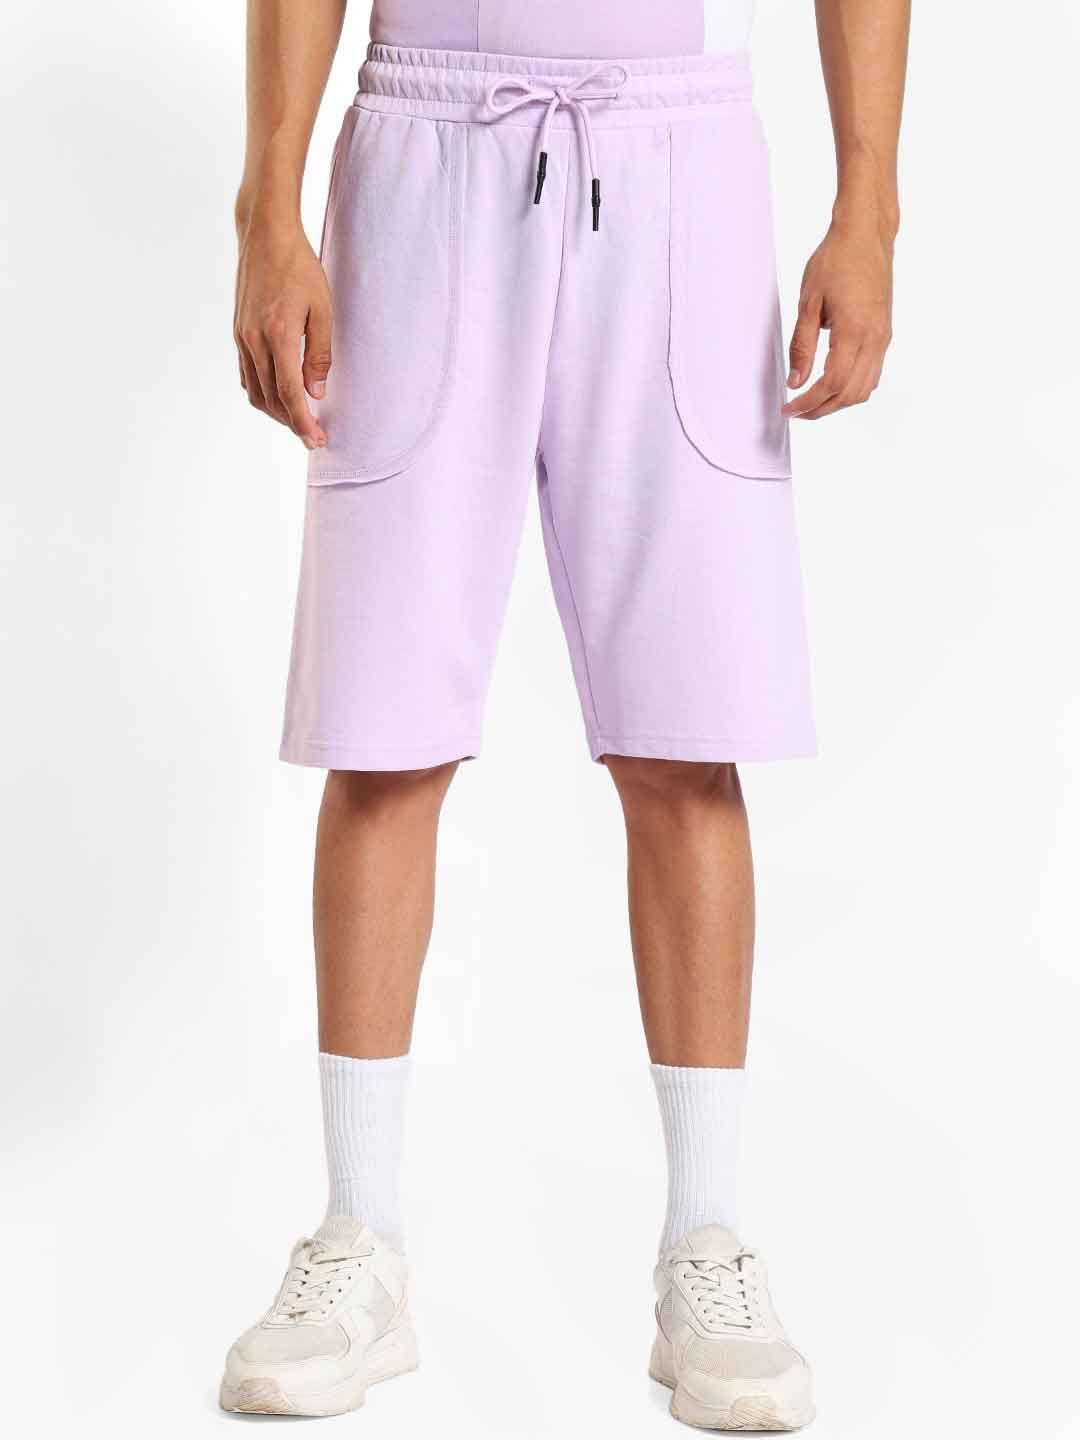 nobero-men-mid-rise-loose-fit-shorts